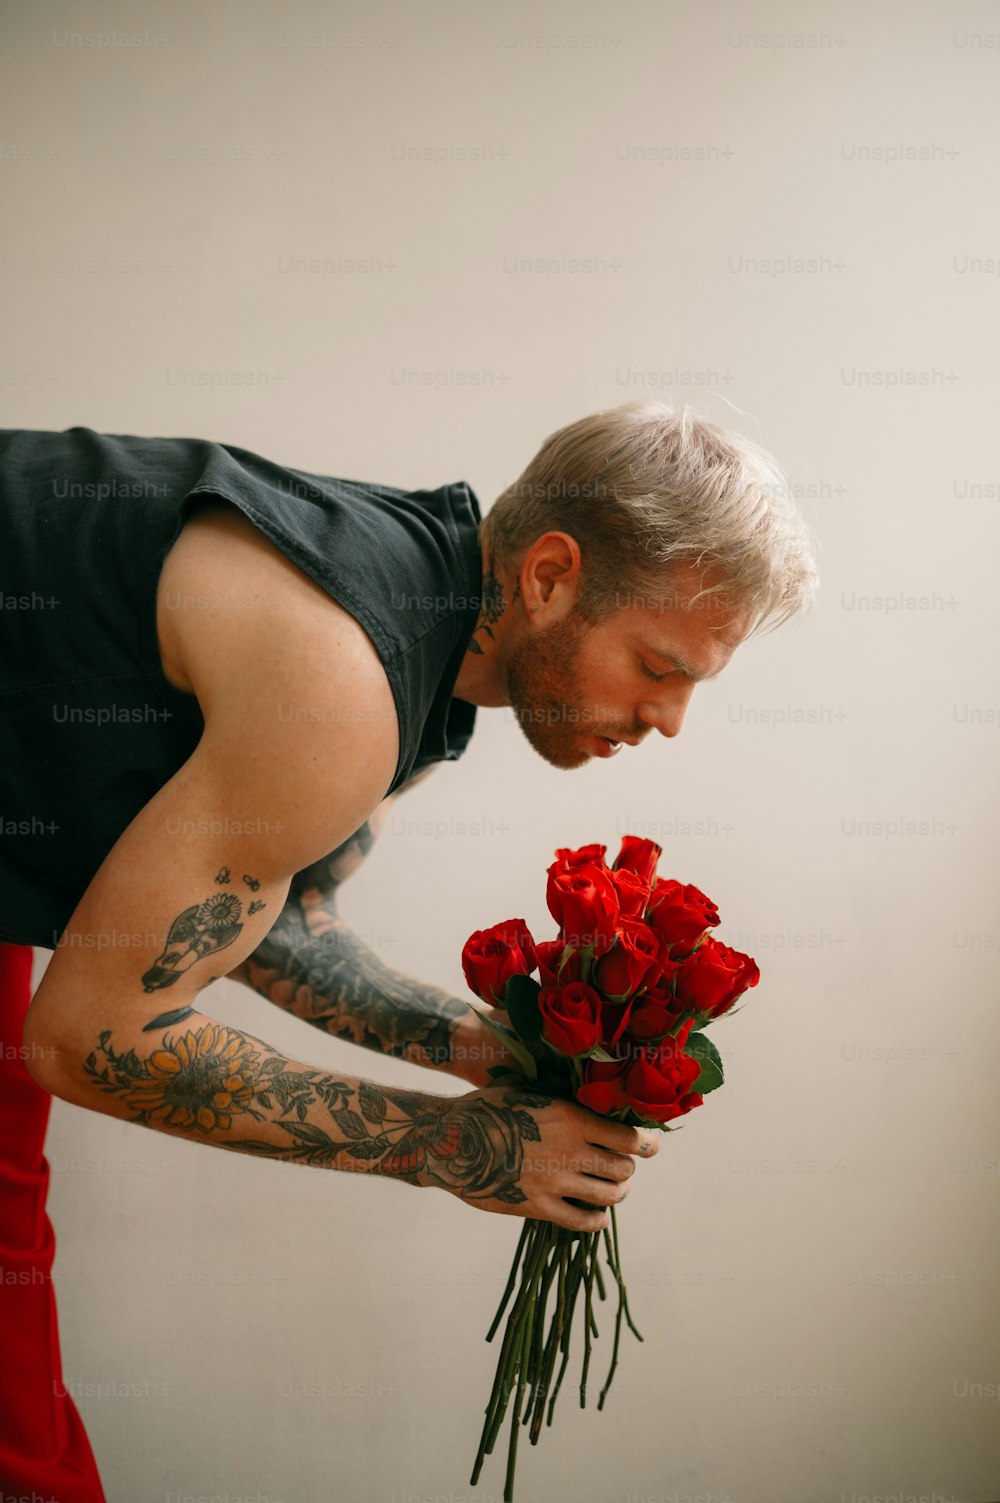 Un hombre sosteniendo un ramo de flores rojas